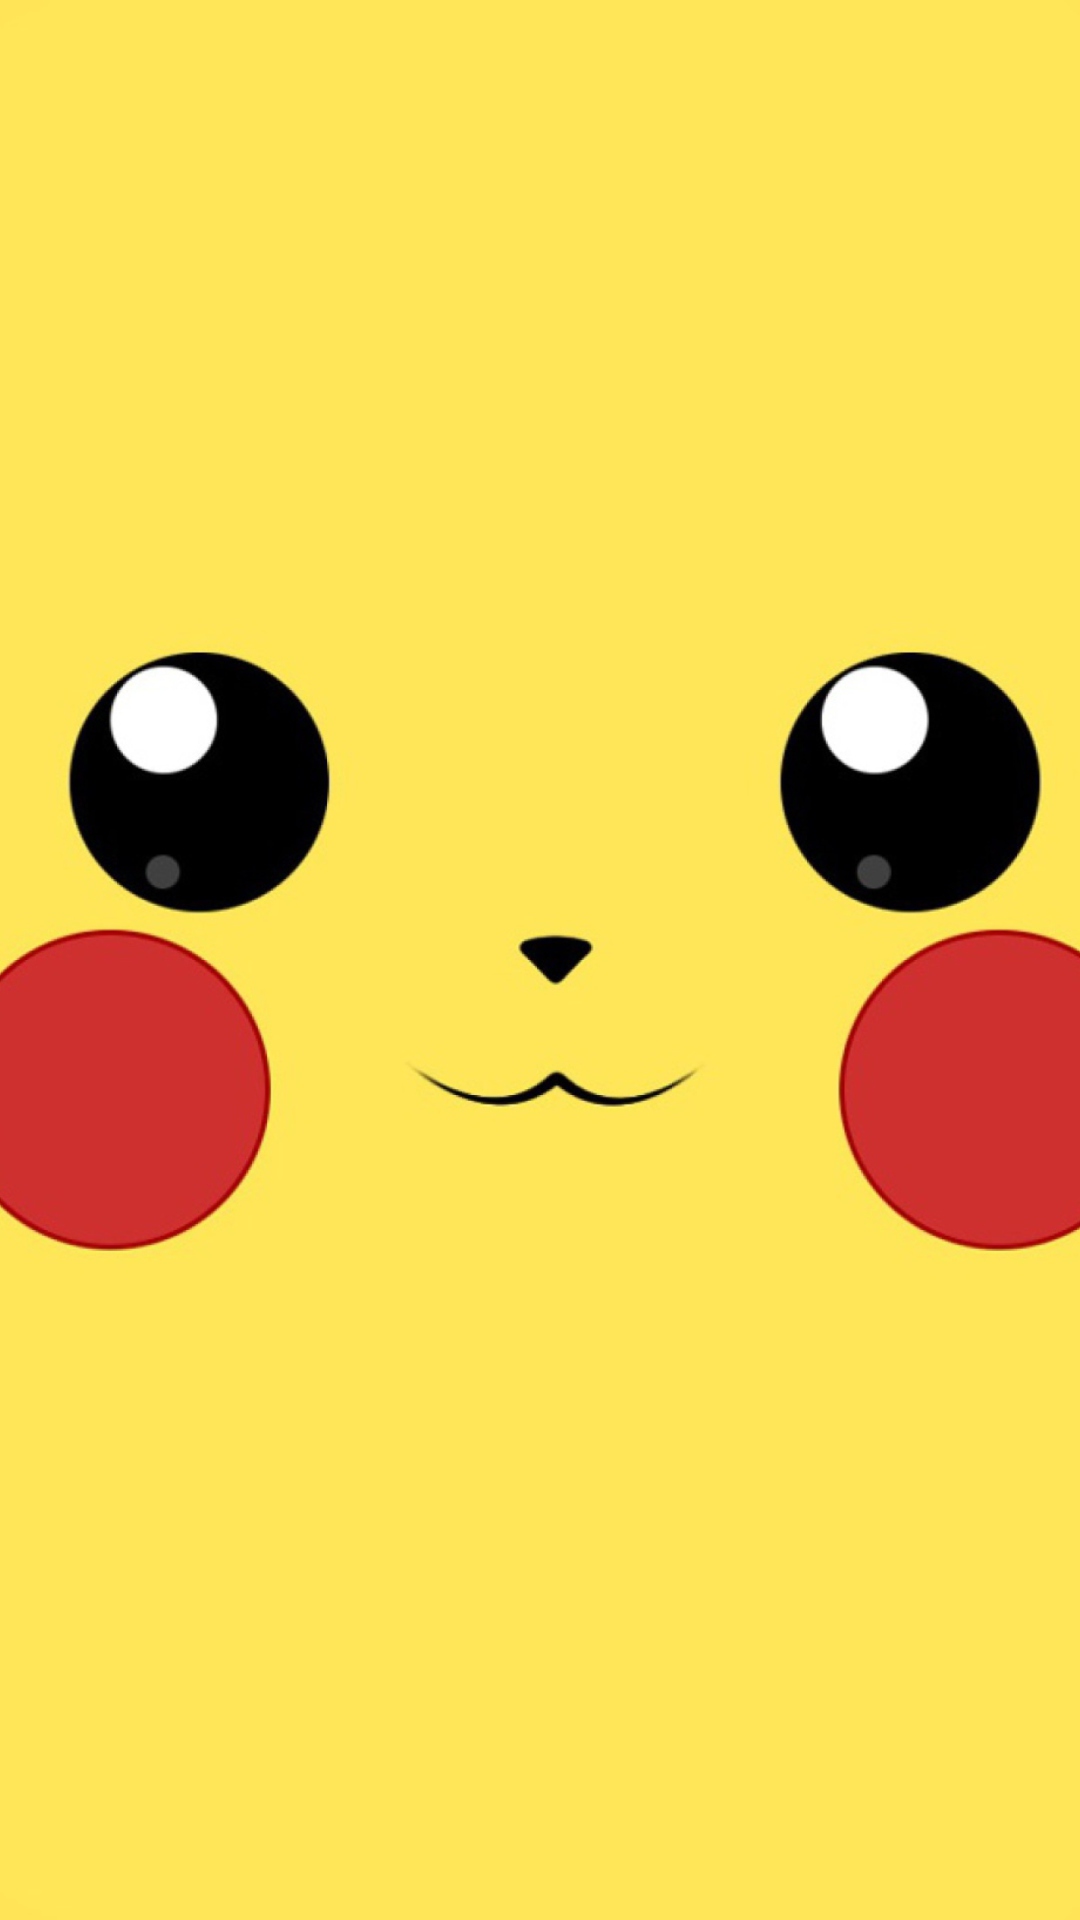 Pikachu wallpaper 1080x1920